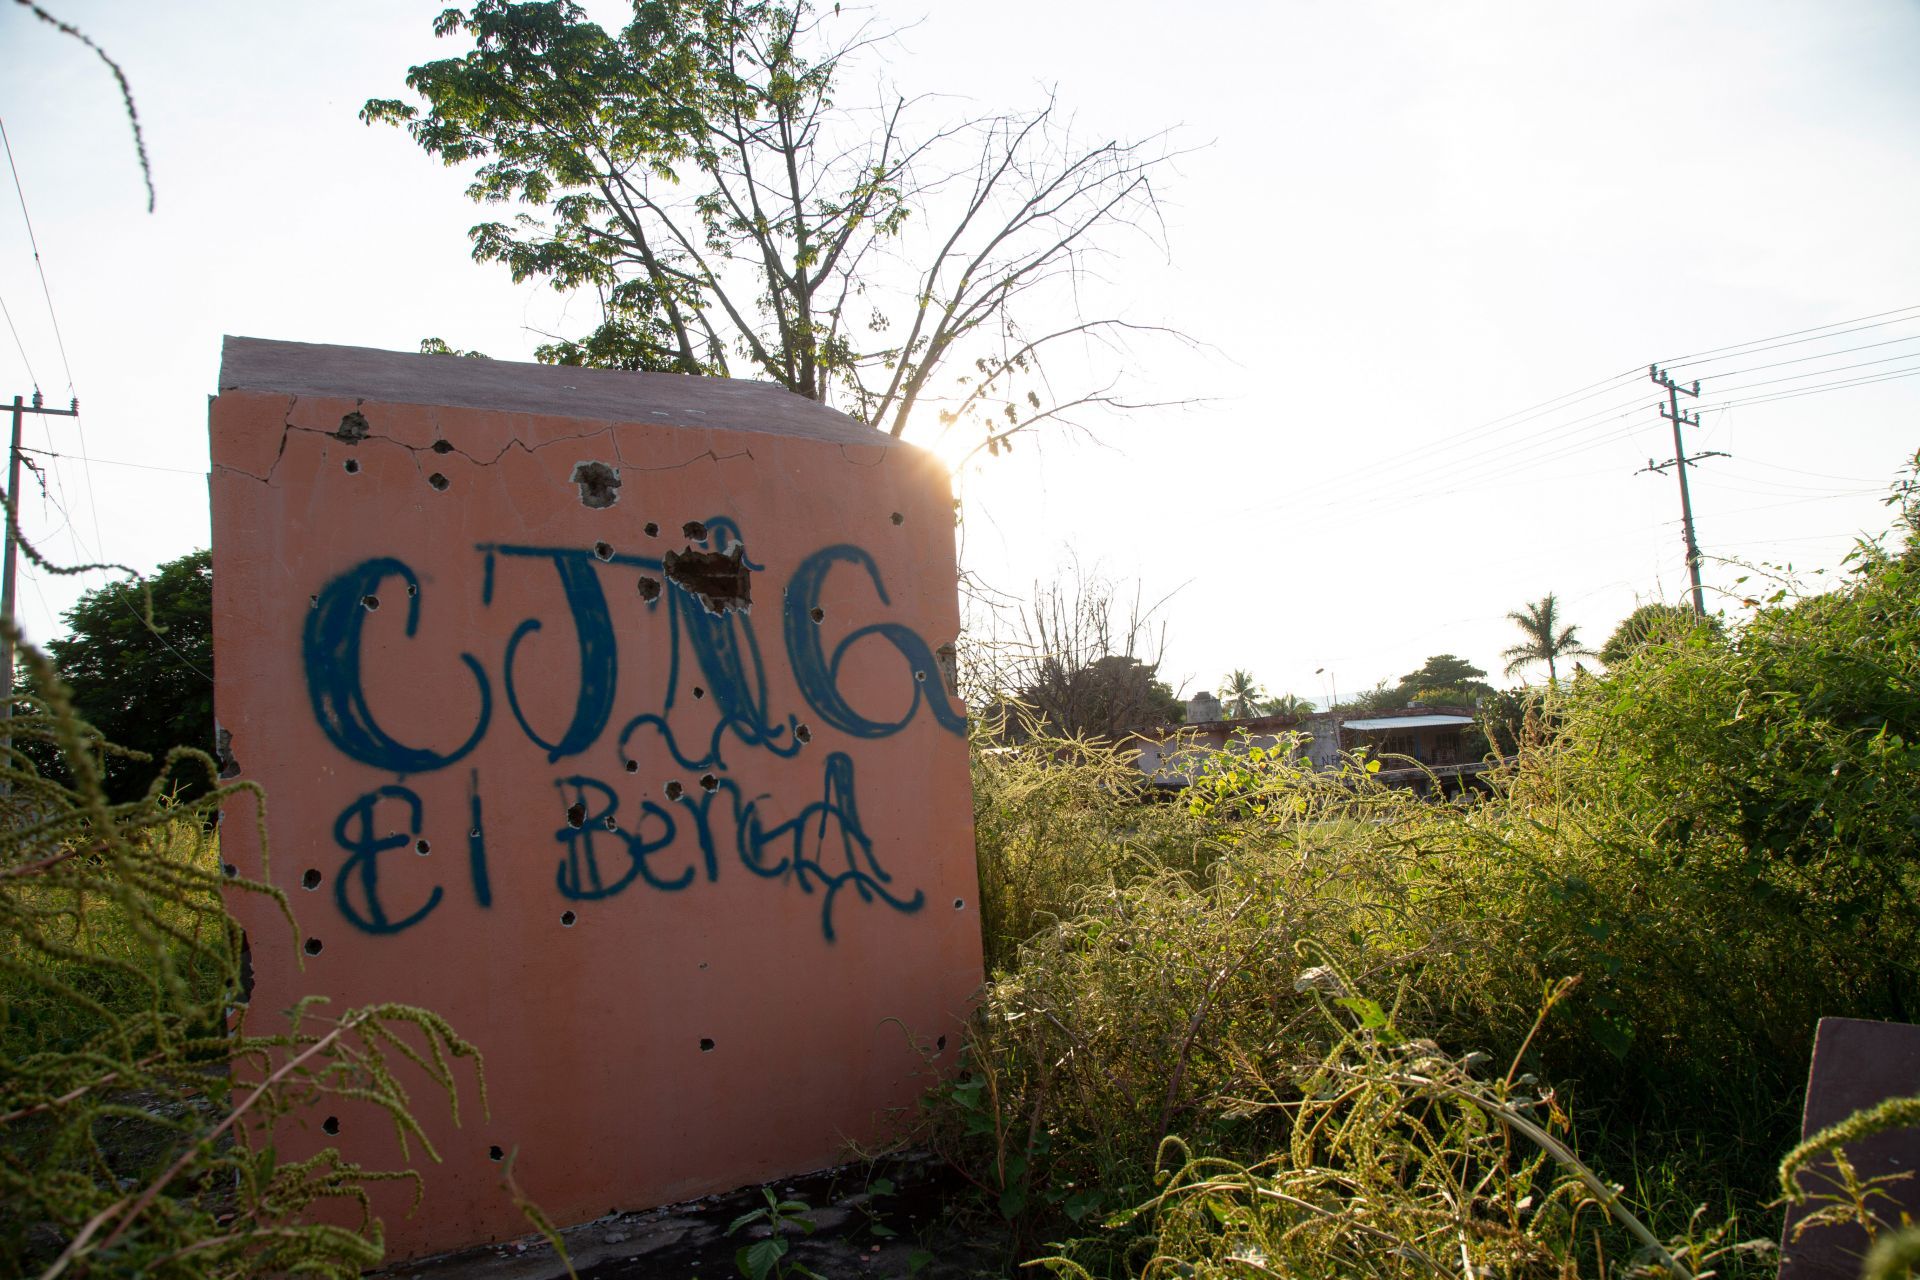 Ambos grupos de narcotraficantes mantienen una pelea por el control del territorio en el estado mexicano (Foto: Juan José Estrada Serafín/Cuartoscuro.com)